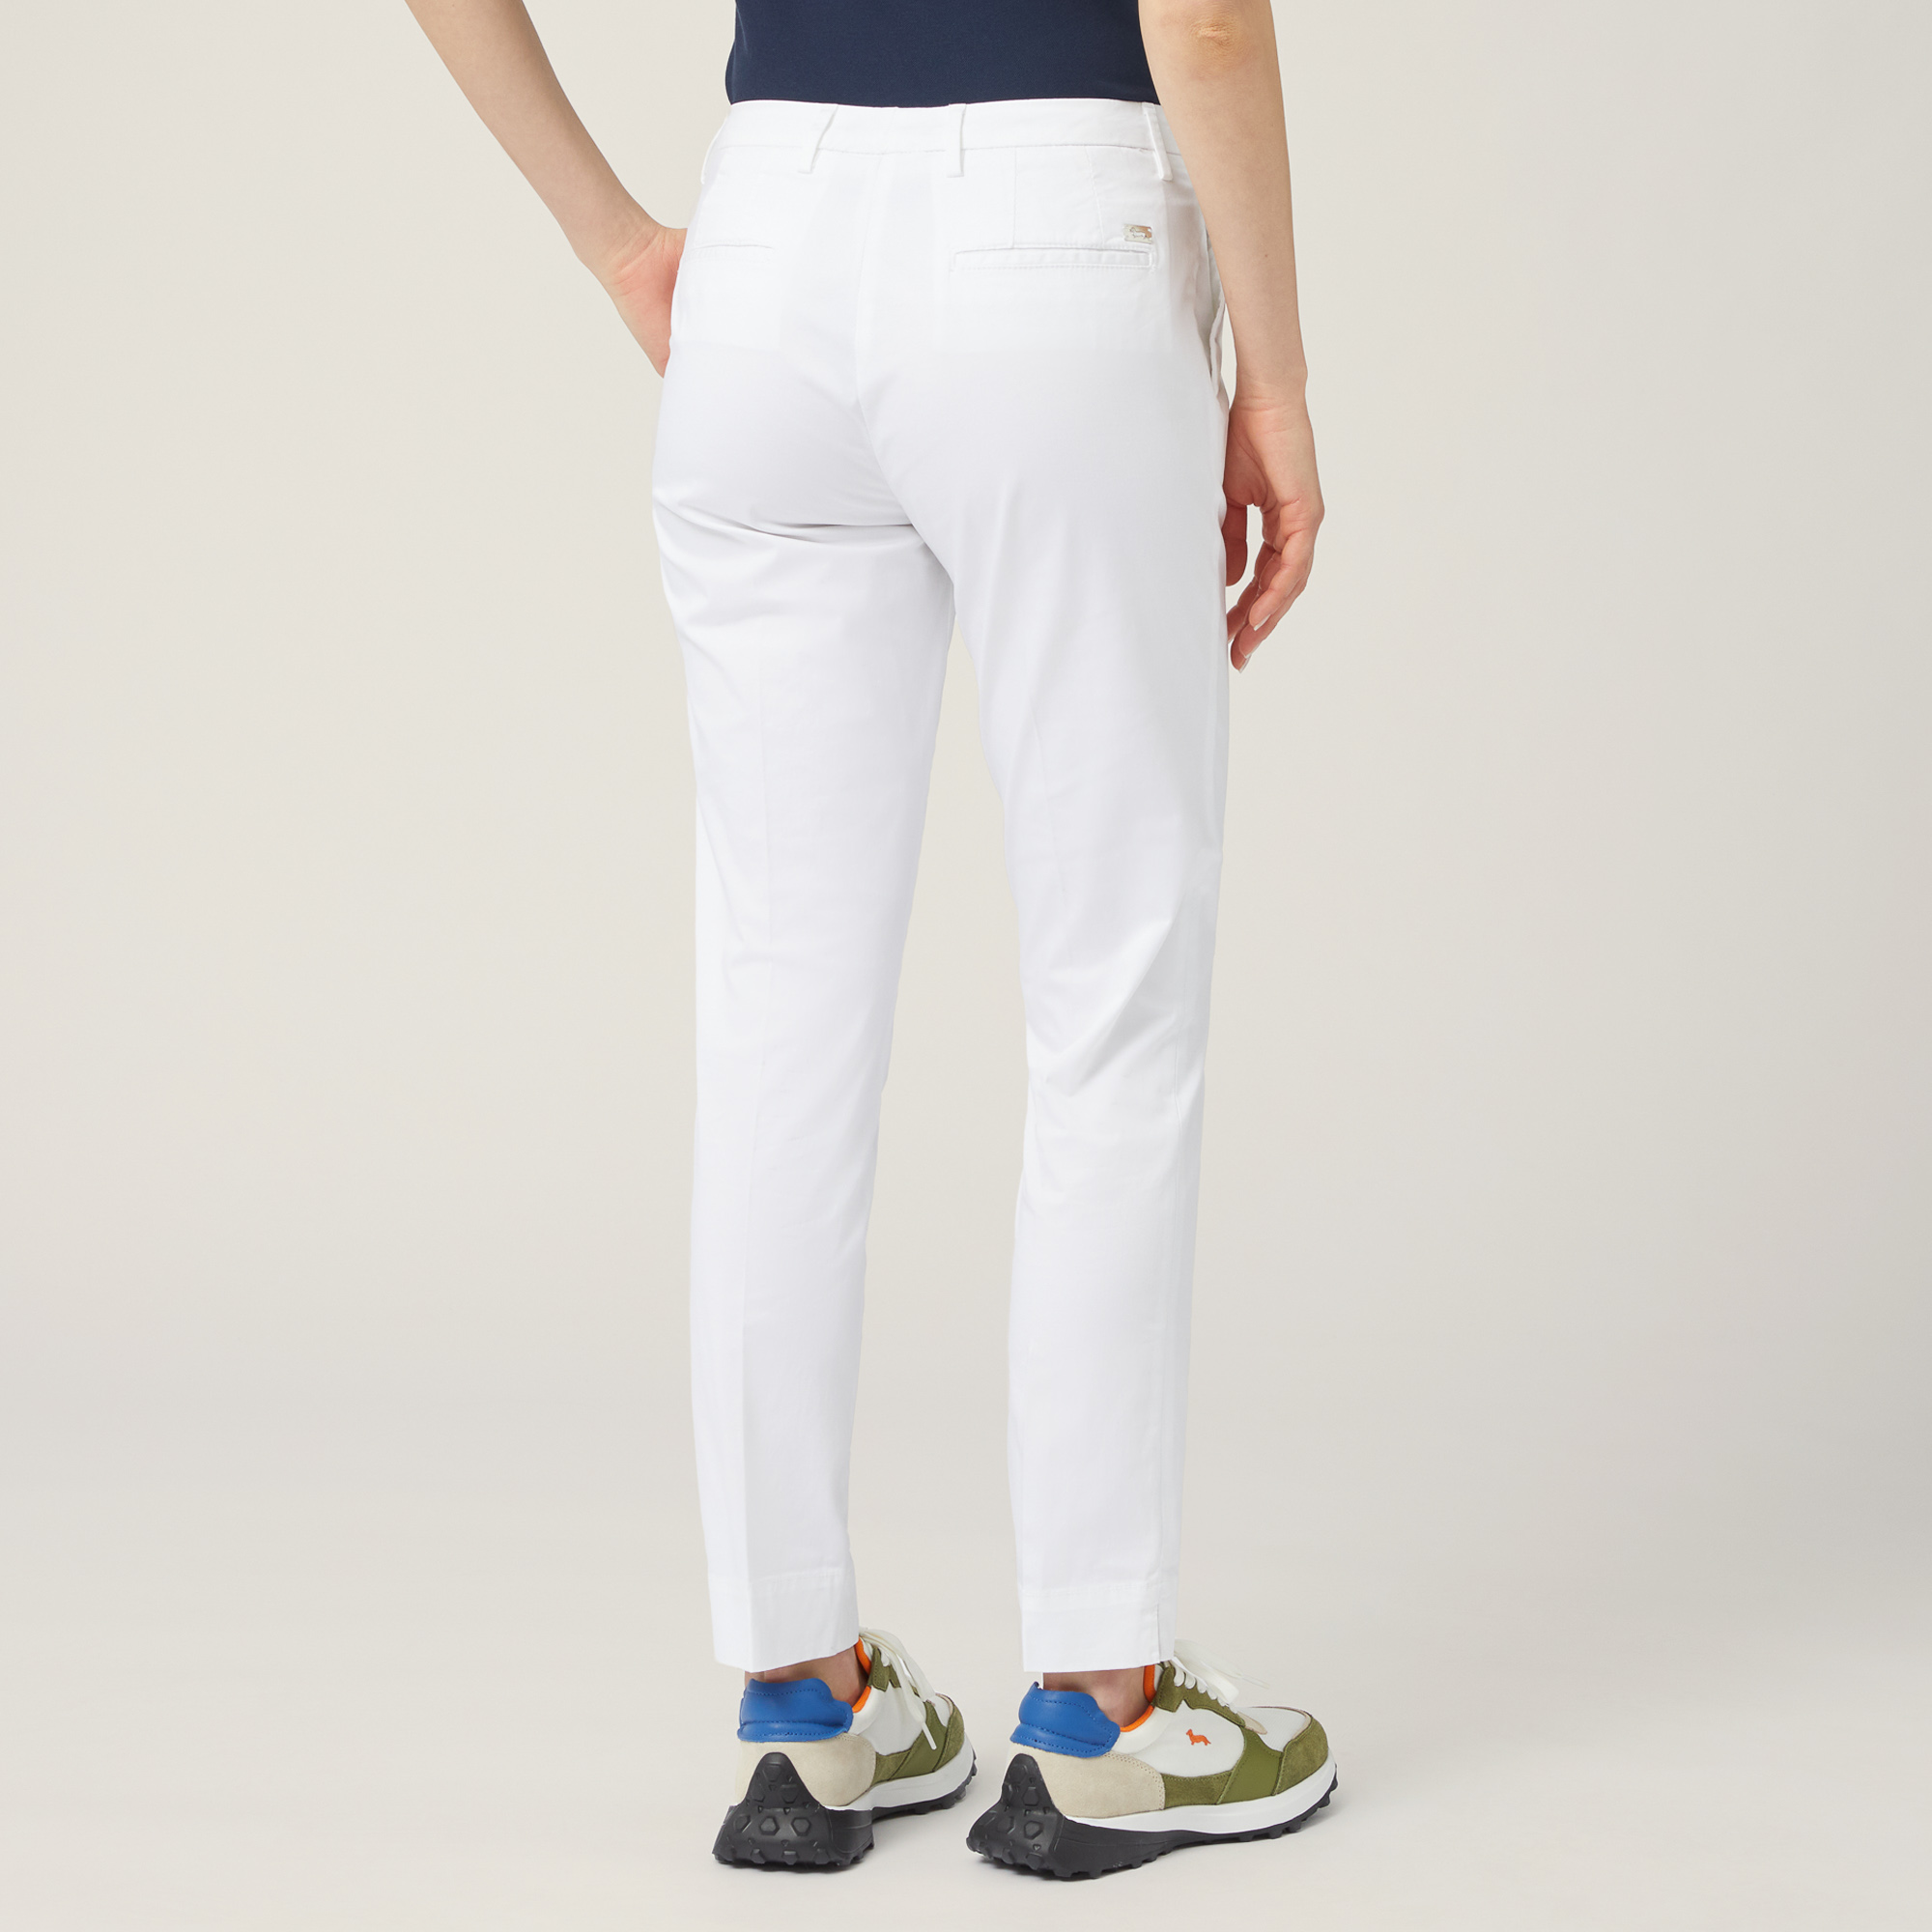 Pantaloni Chino In Raso, Bianco, large image number 1